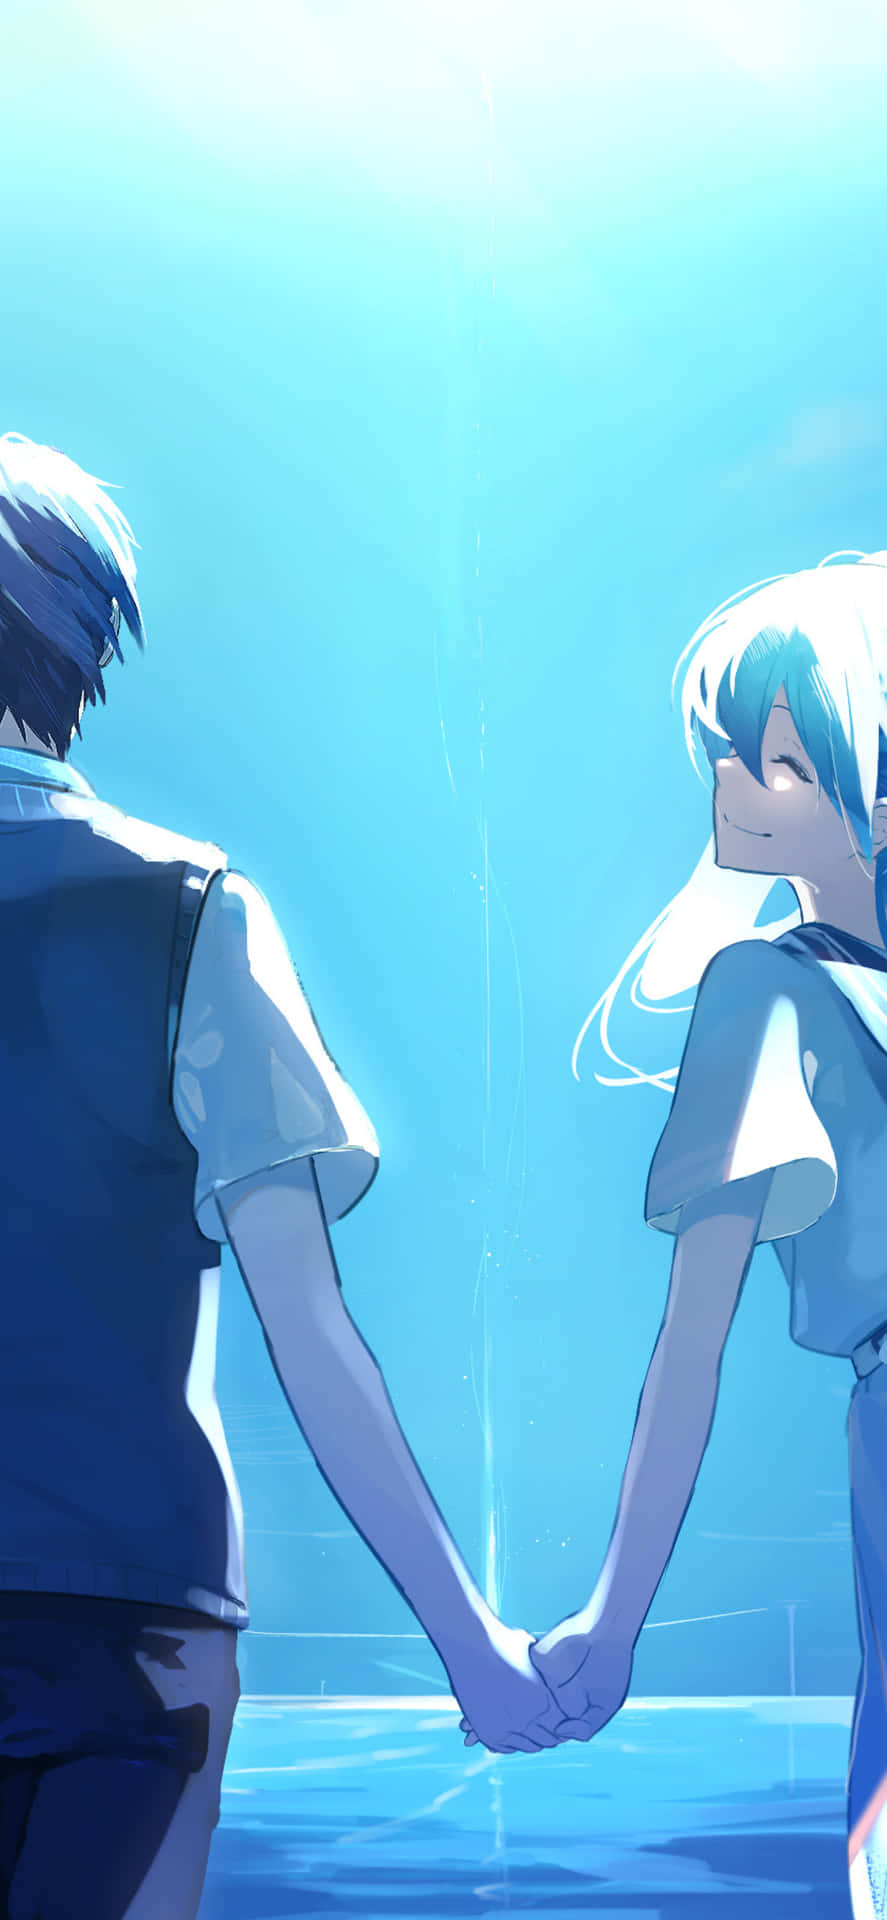 Et sødt, romantisk øjeblik mellem to anime elskere. Wallpaper